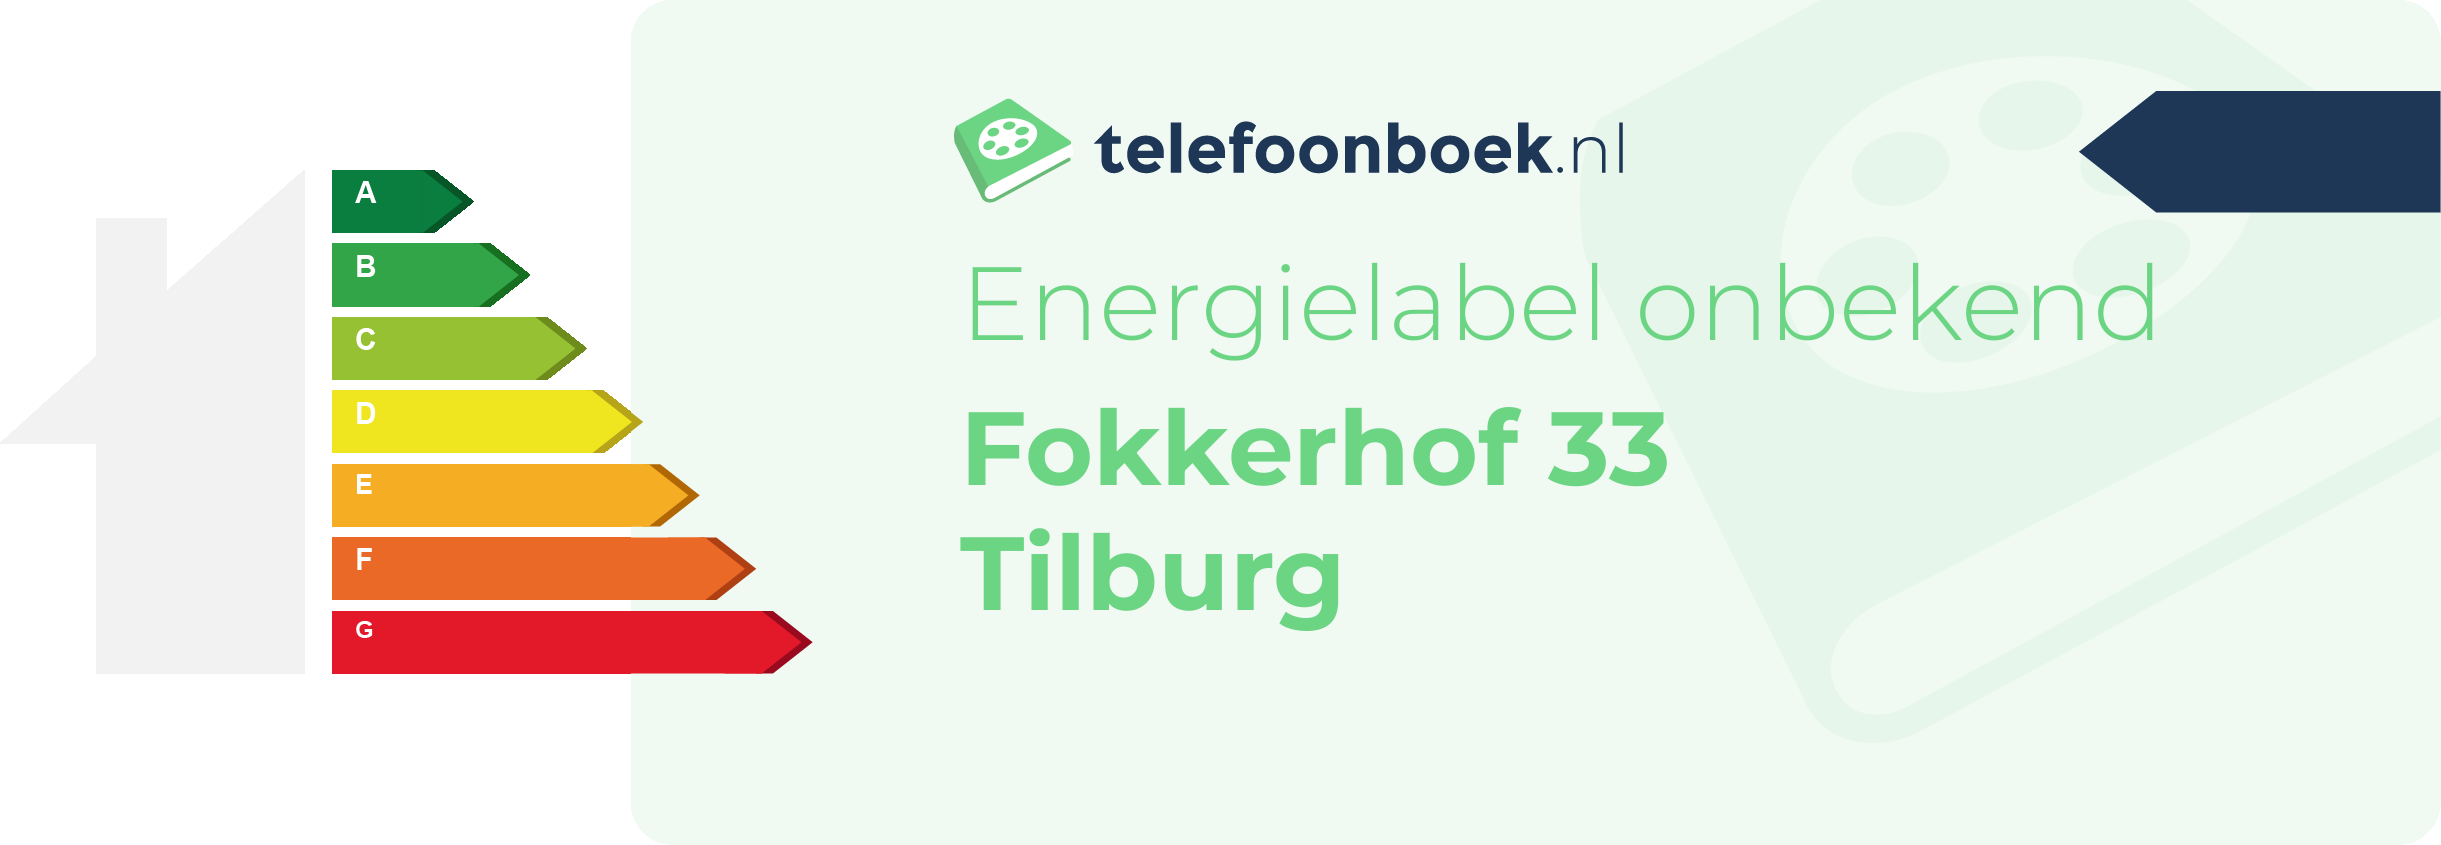 Energielabel Fokkerhof 33 Tilburg